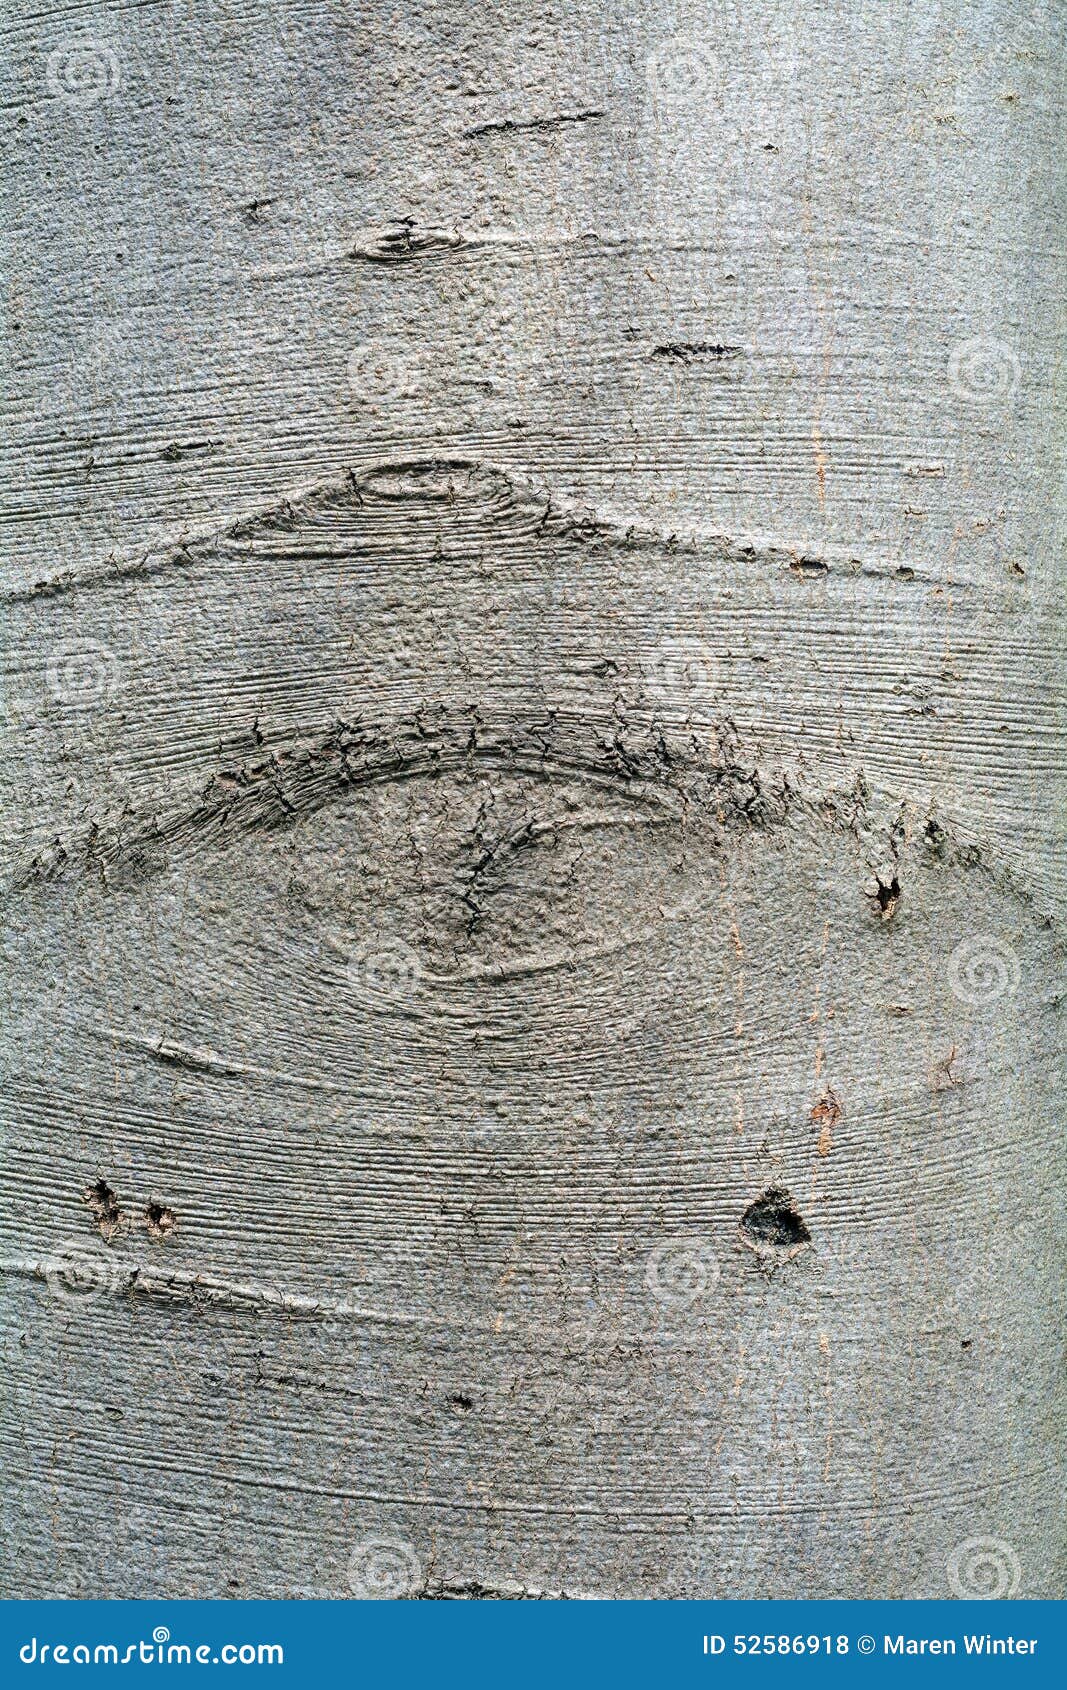 bark of an beech tree, background texture